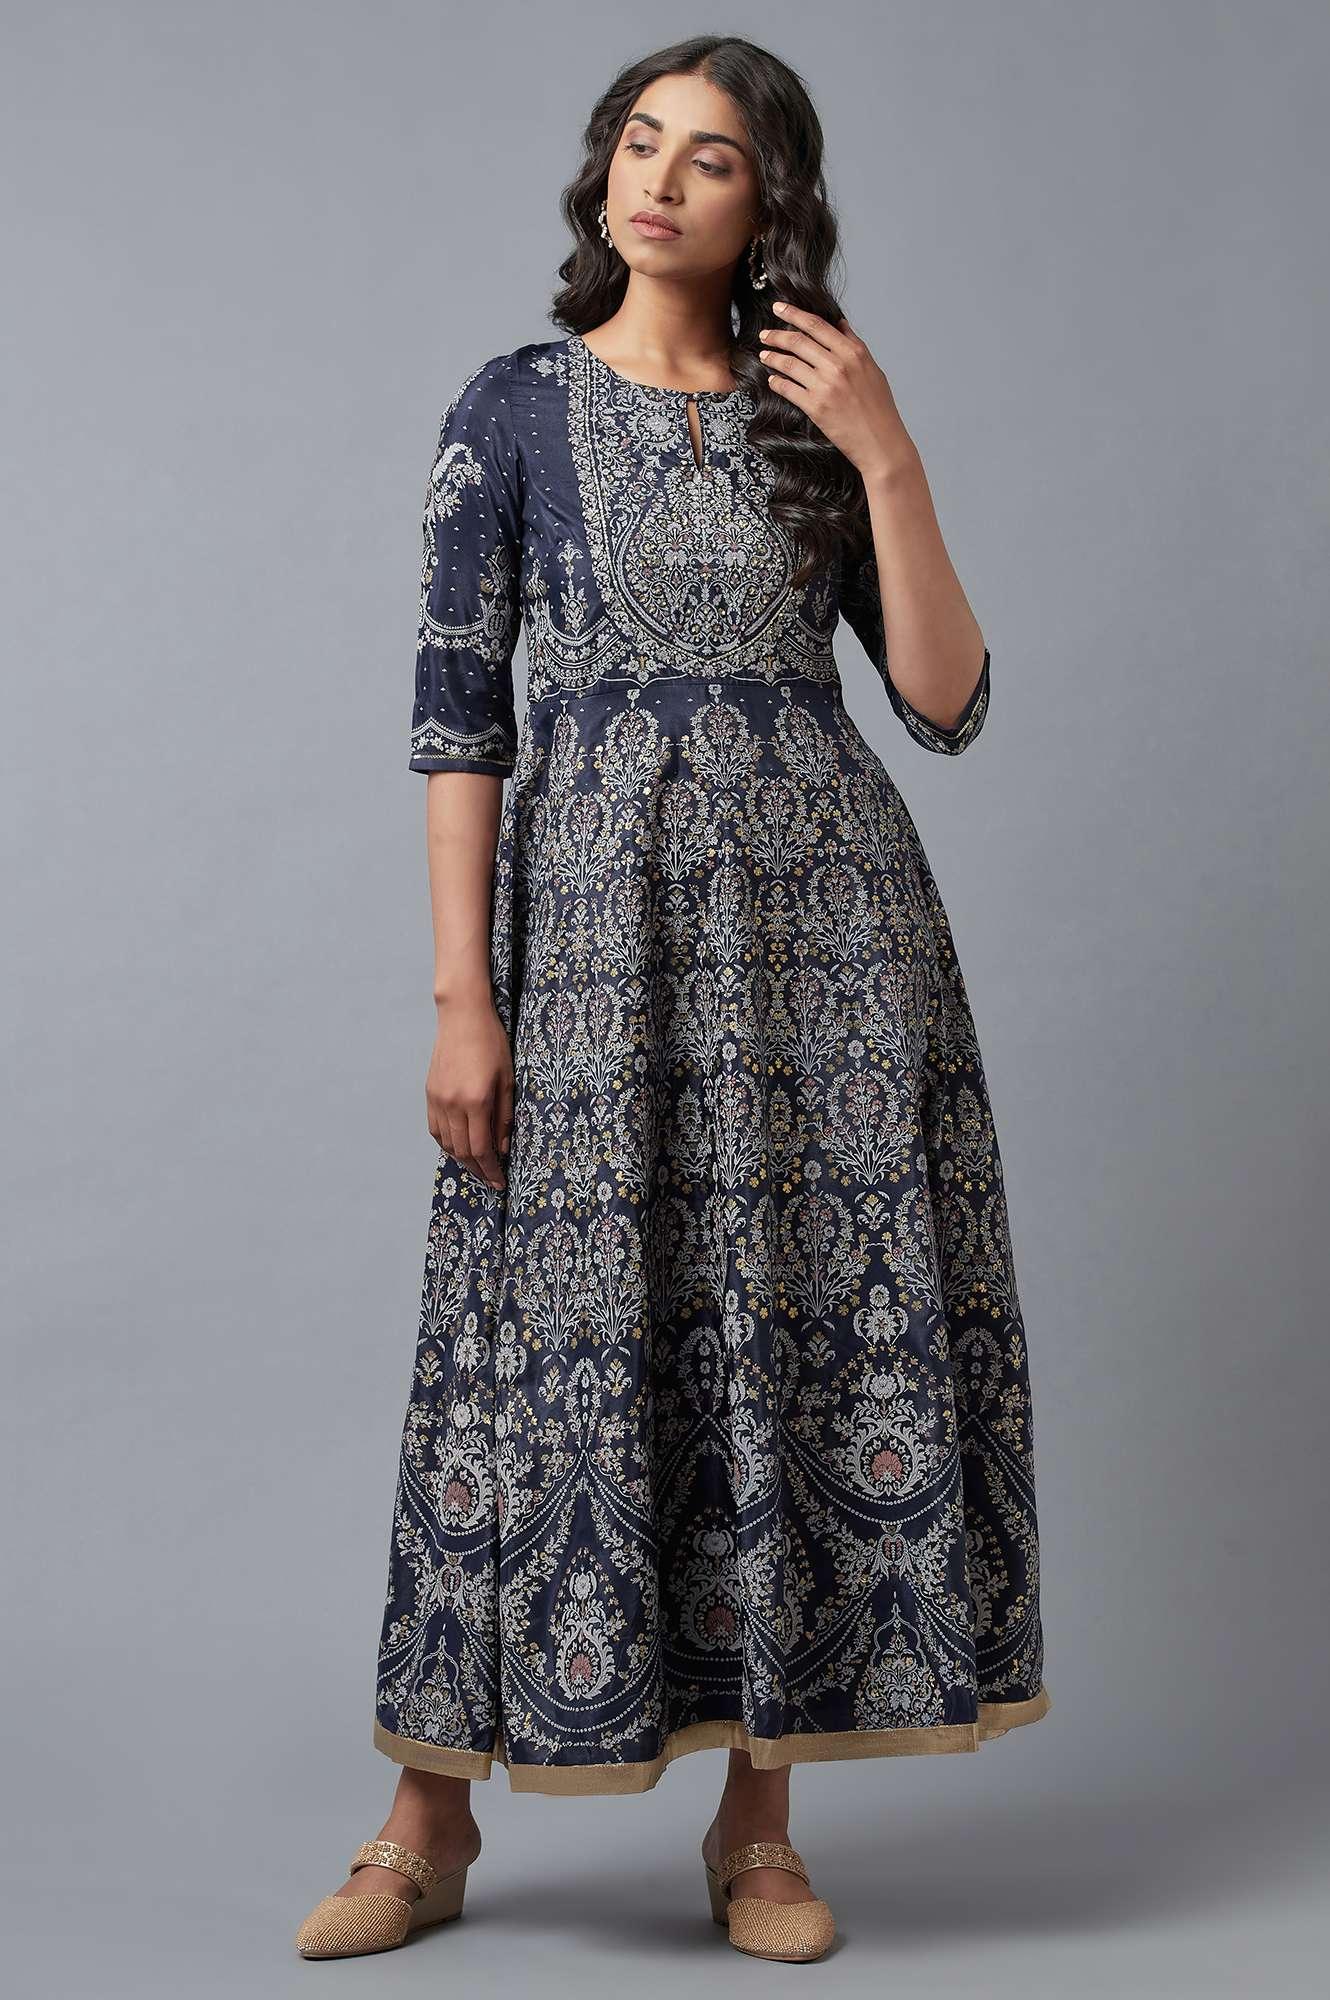 Dark Blue Floral Print Indie Dress - wforwoman